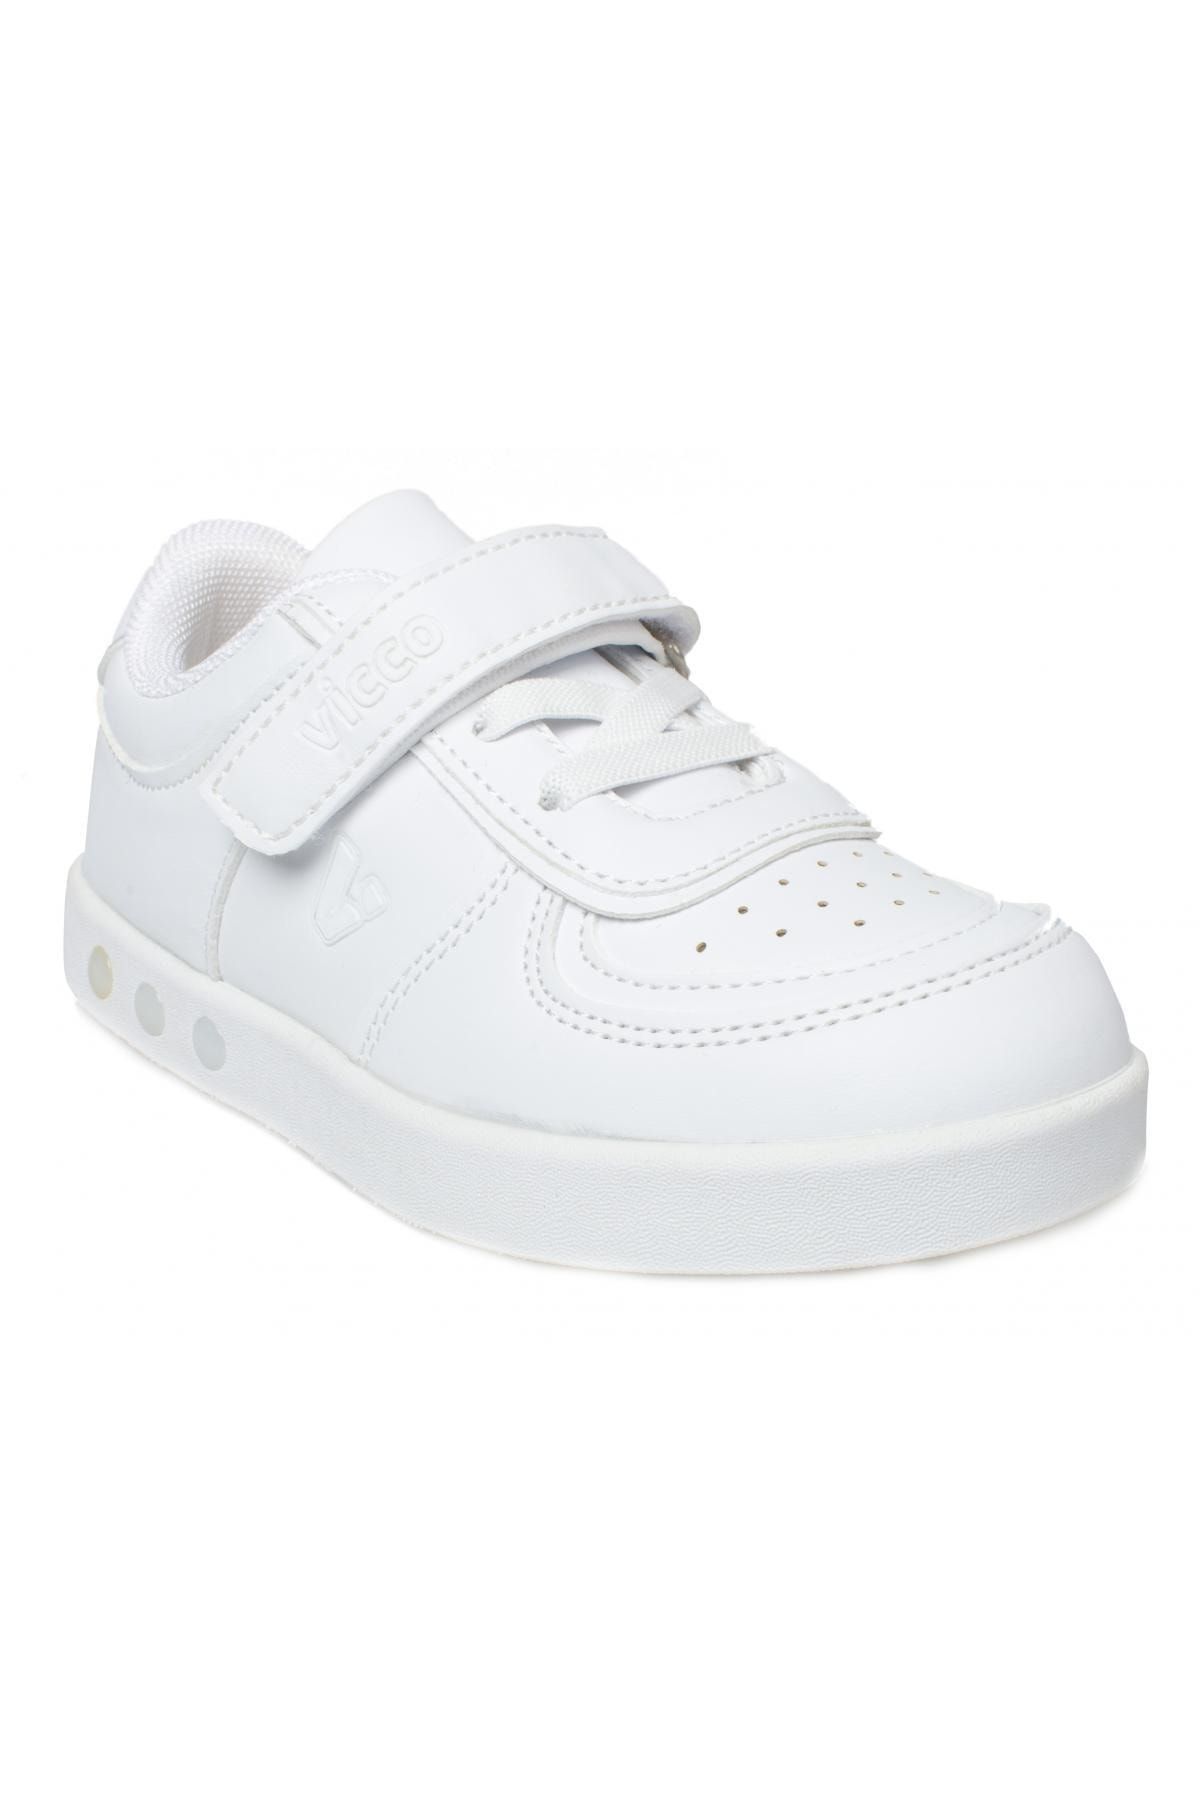 Vicco 313.f21k130 Sam Filet Işıklı Beyaz Çocuk Spor Ayakkabı